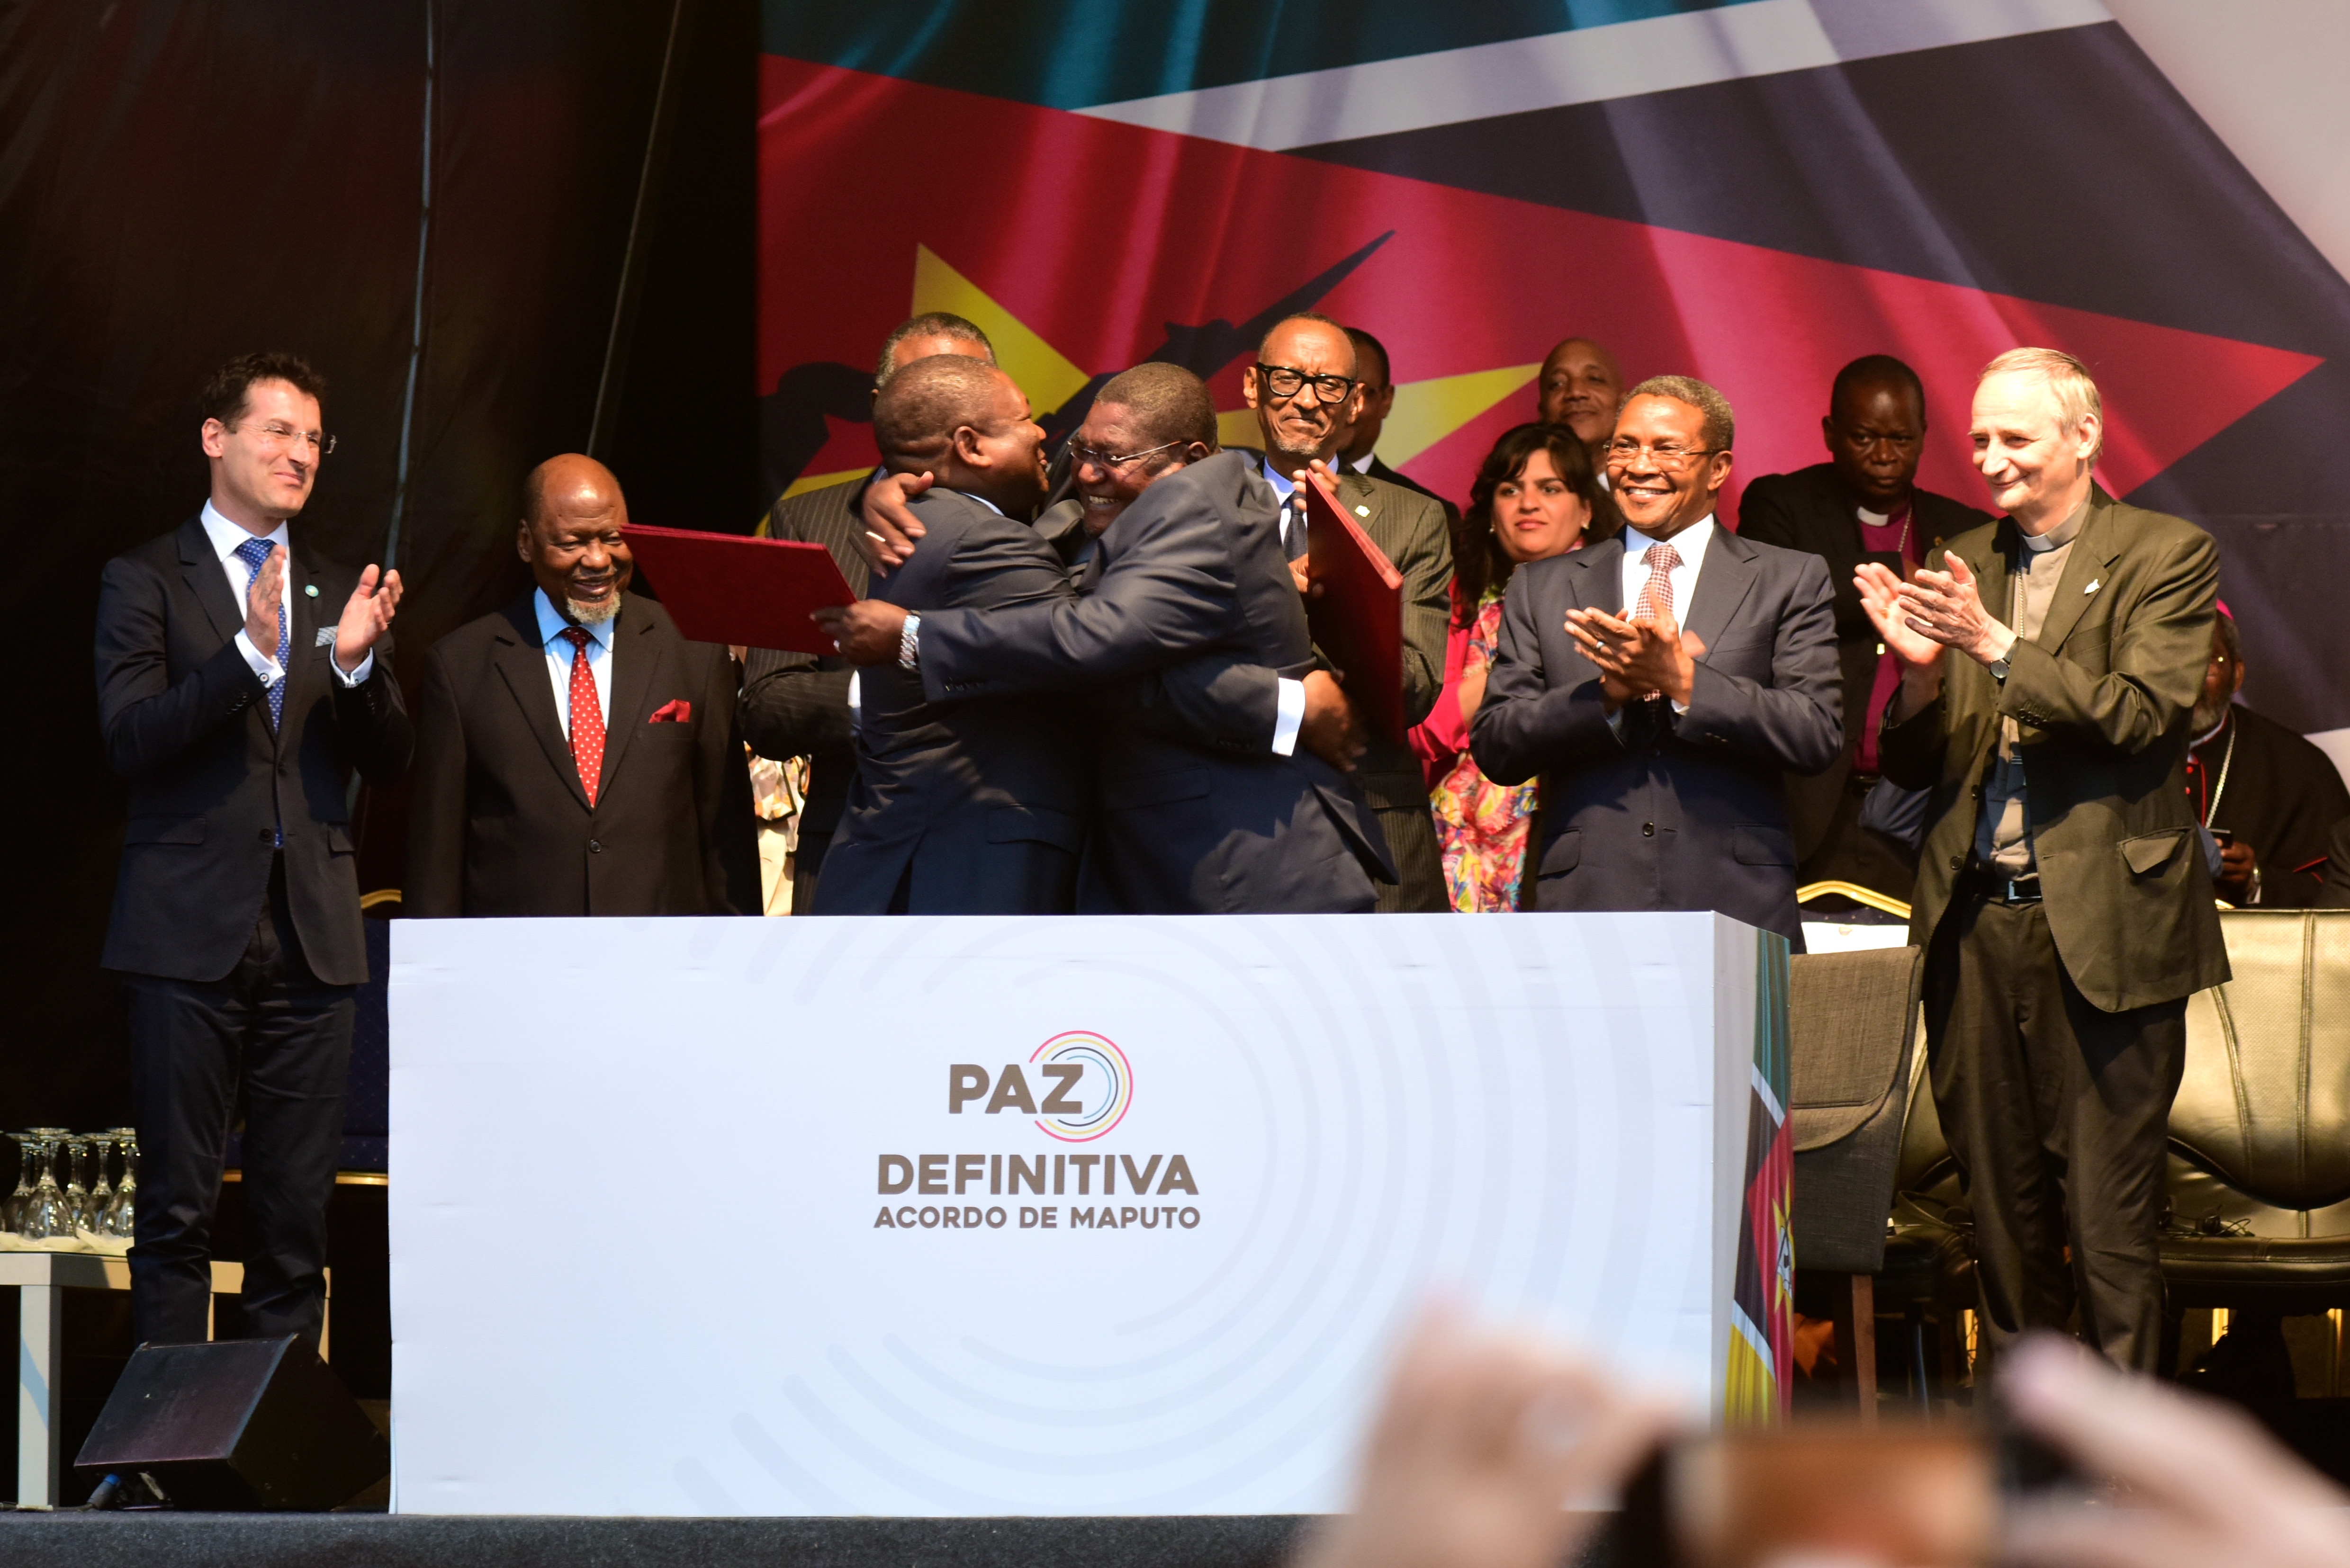 Mosambiks Präsident Nyusi und der Führer der einstigen Rebellengruppe Renamo, Momade, umarmen sich bei der Zeremonie zum Friedensabkommen nach Jahrzehnten der Gewalt.